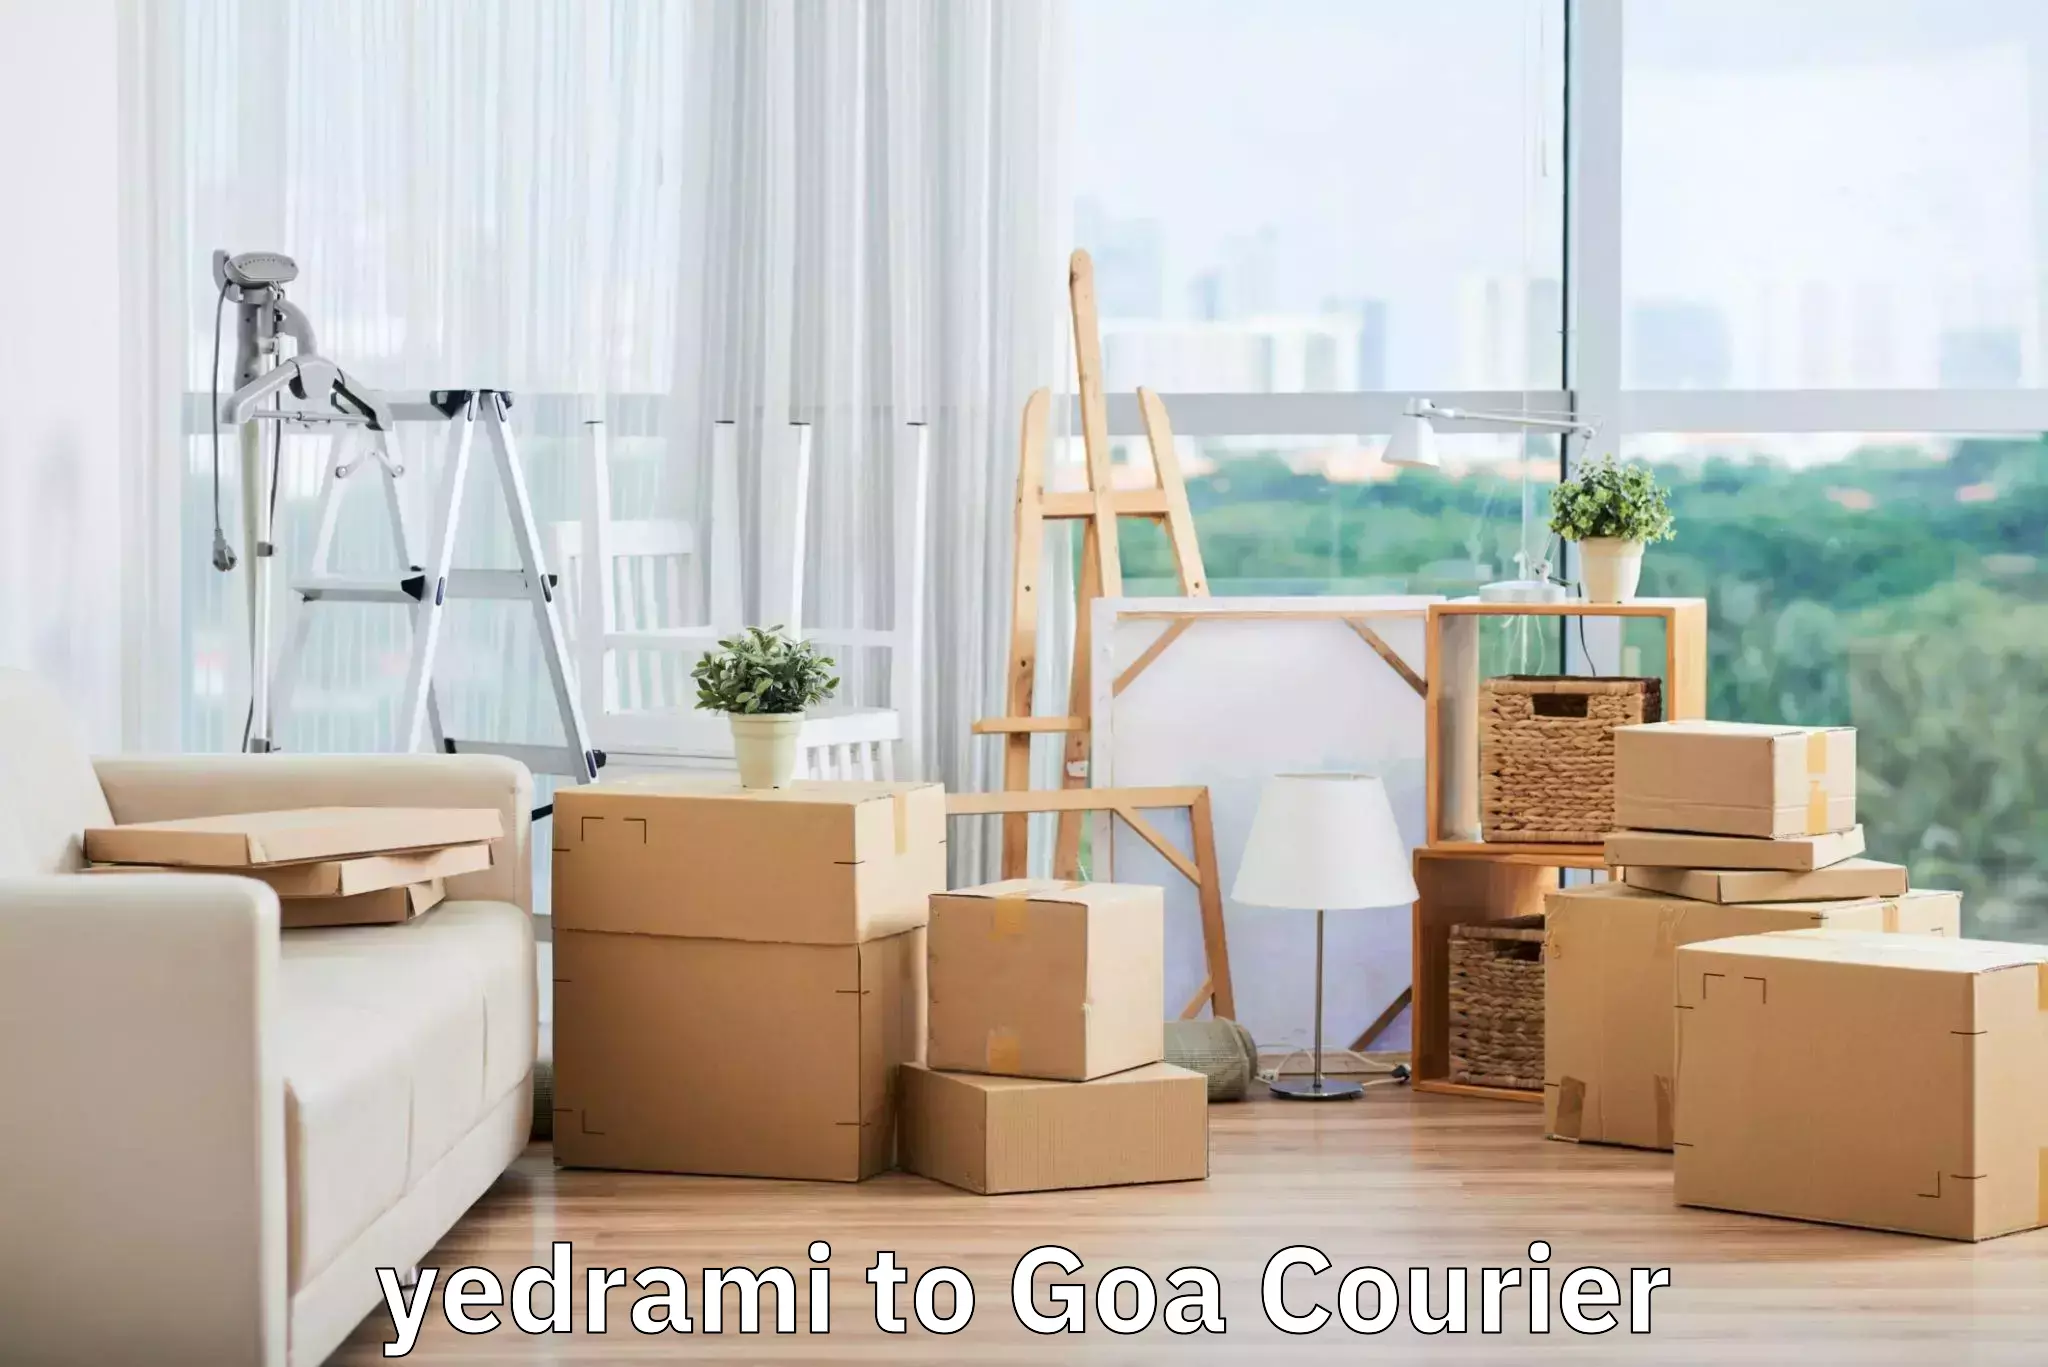 Versatile luggage courier yedrami to Goa